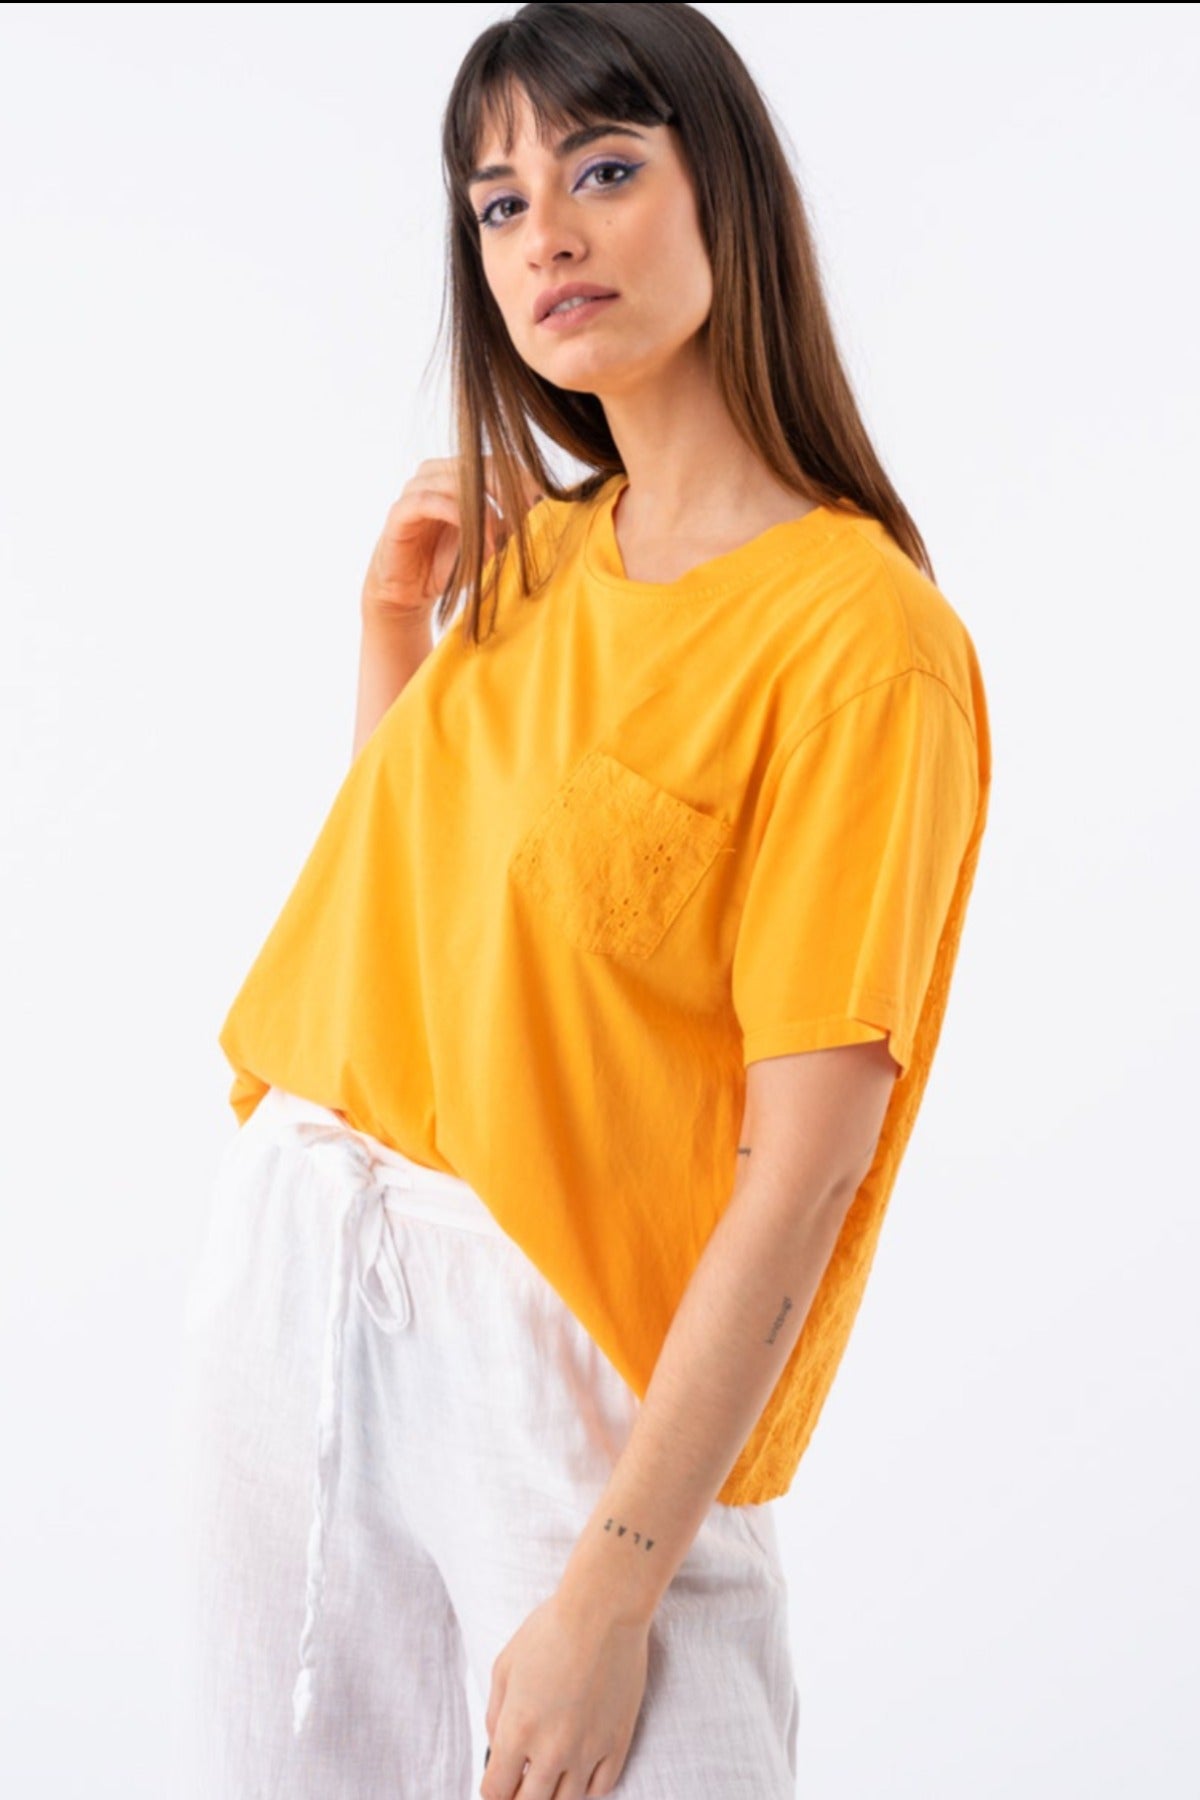 Remera Lupe - Naranja | Blusas, Camisas y Remeras | Viviana Méndez - Remera Lupe Naranja - Viviana Méndez